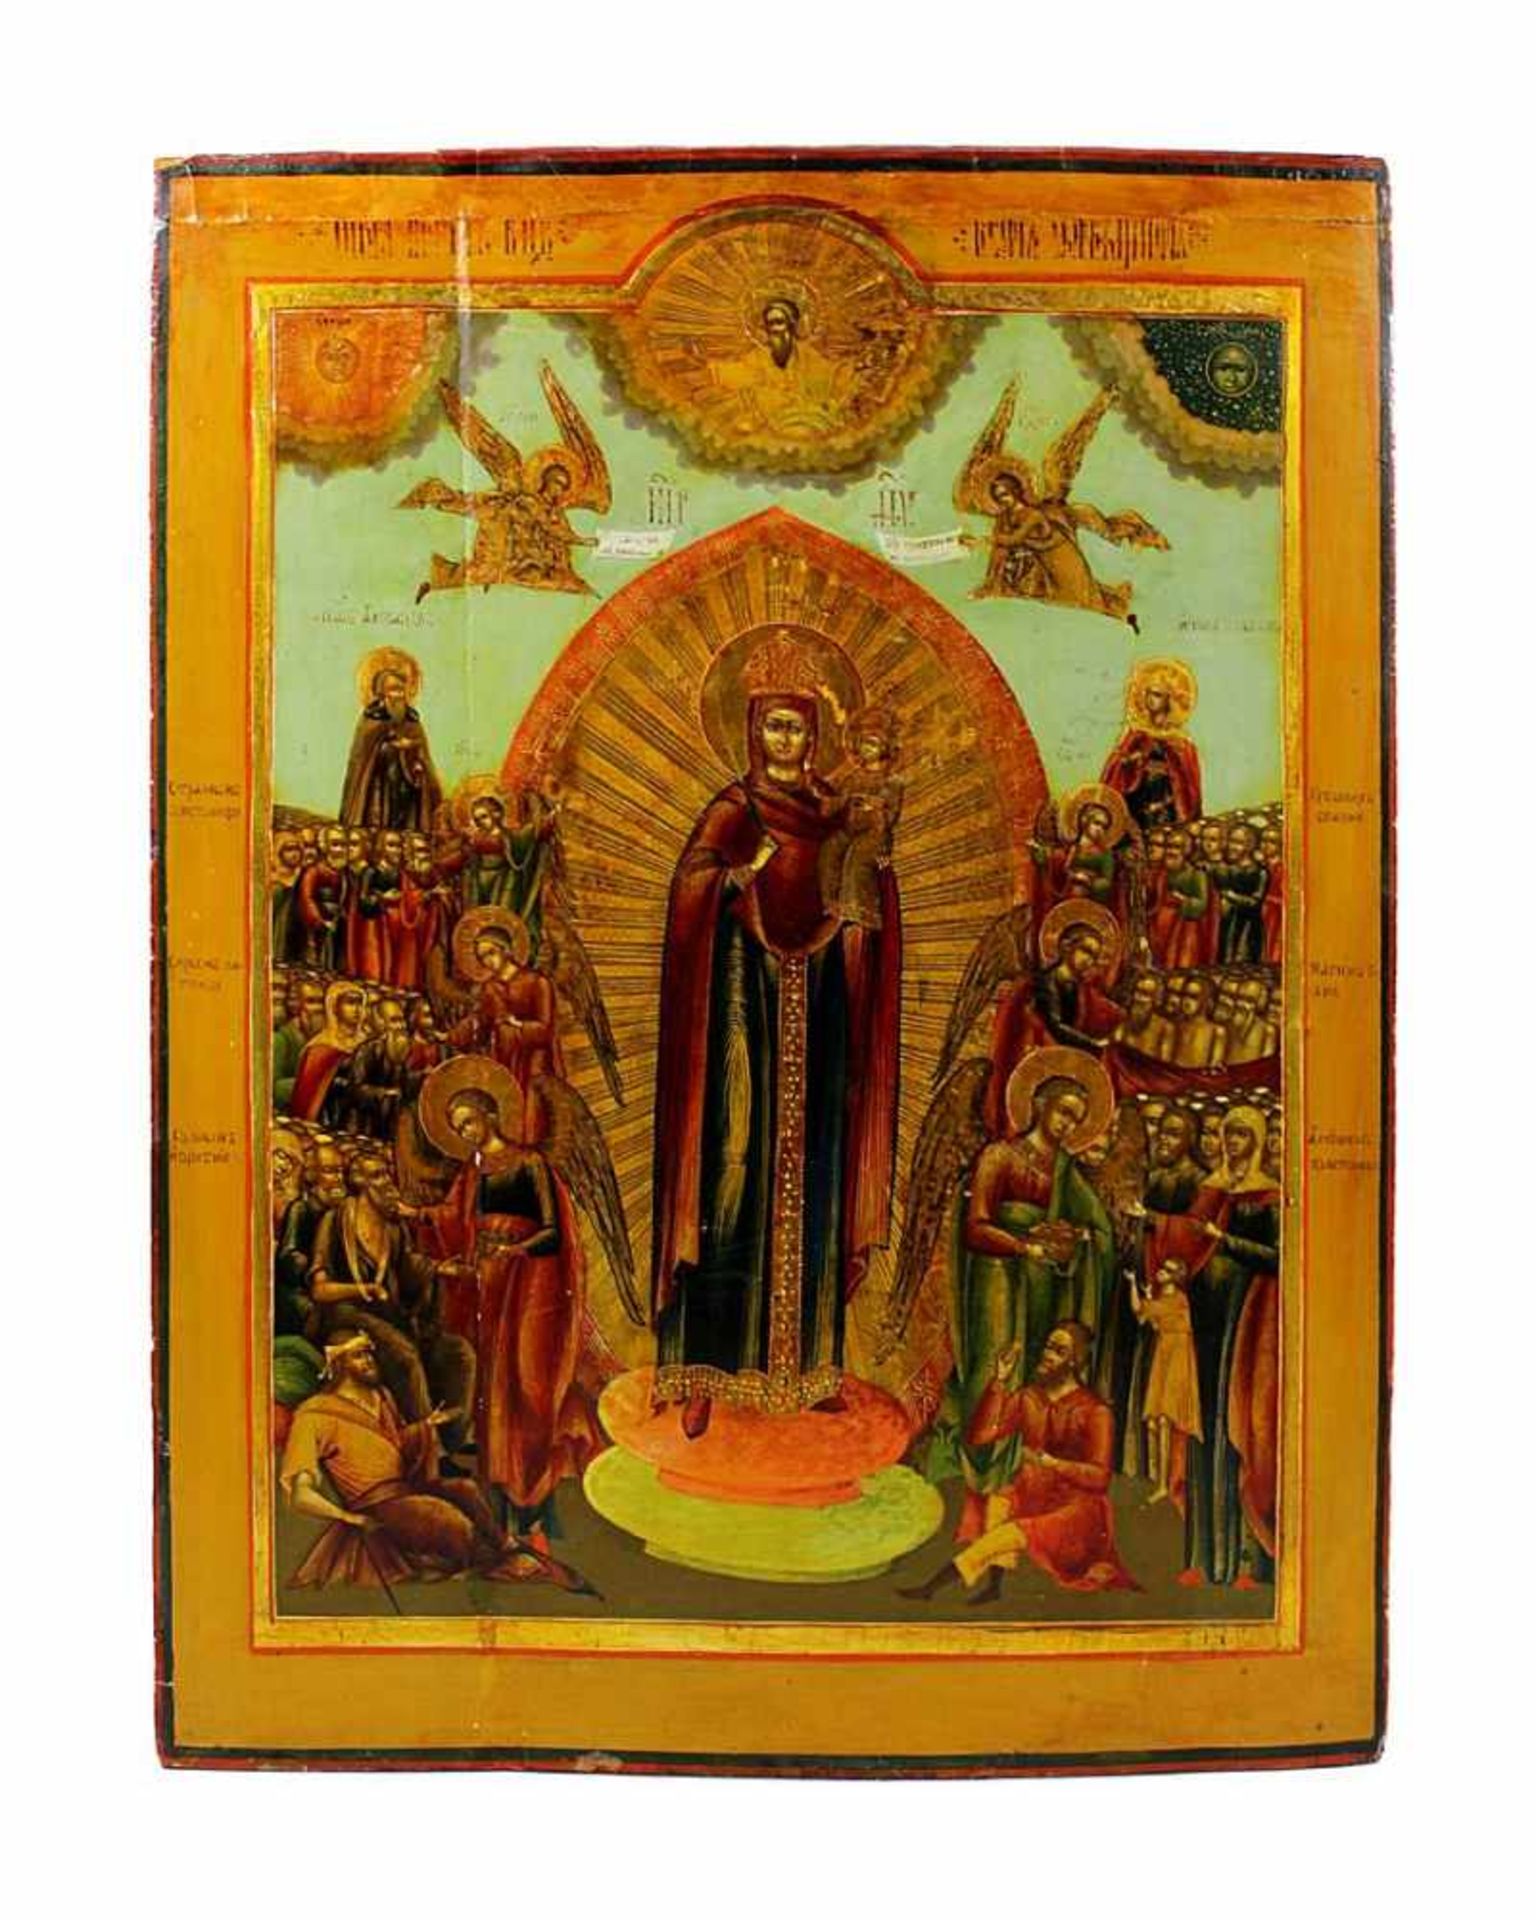 Ikone, Gottesmutter - Trost aller Leidenden, Russland, Mitte 19. Jh., mittig die Gottesmutter mit